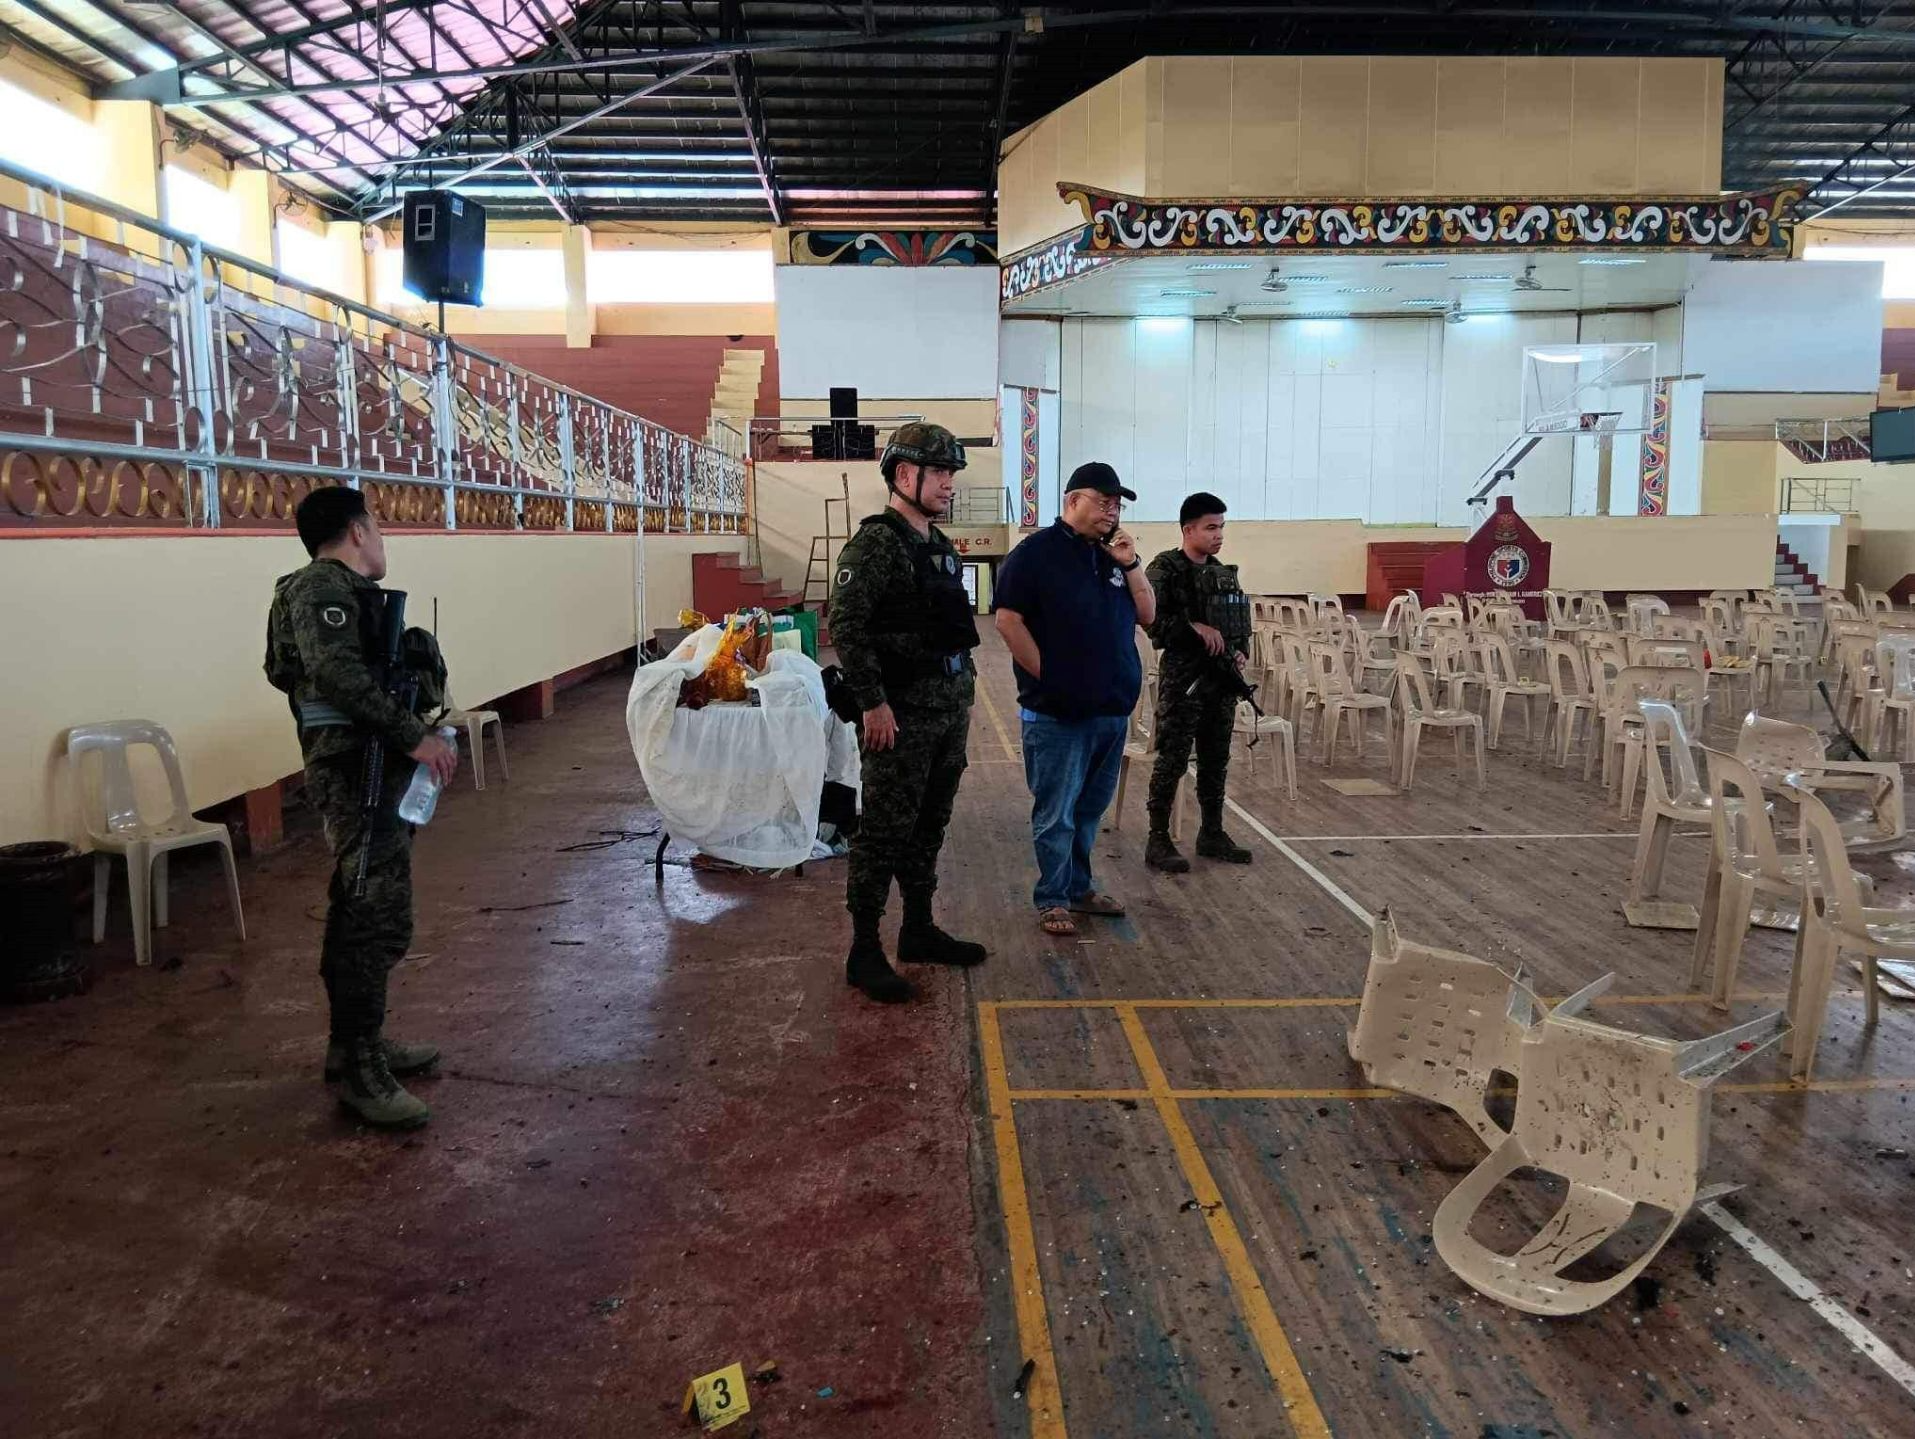 极端组织“伊斯兰国”宣称对菲律宾马拉维市爆炸事件负责